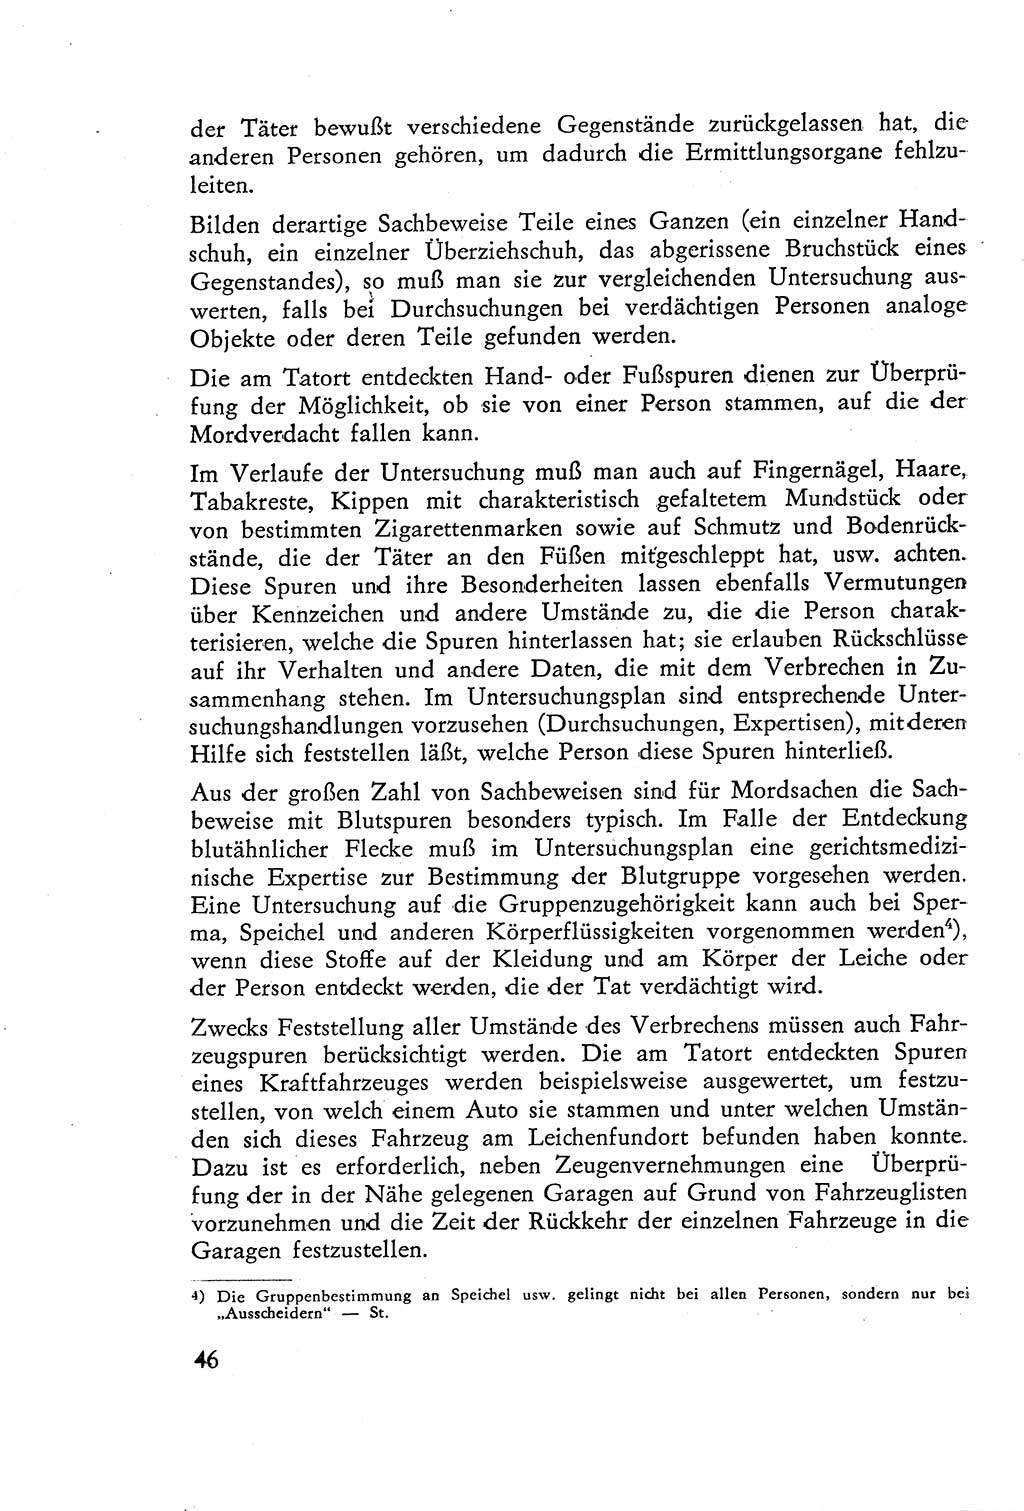 Die Untersuchung einzelner Verbrechensarten [Deutsche Demokratische Republik (DDR)] 1960, Seite 46 (Unters. Verbr.-Art. DDR 1960, S. 46)